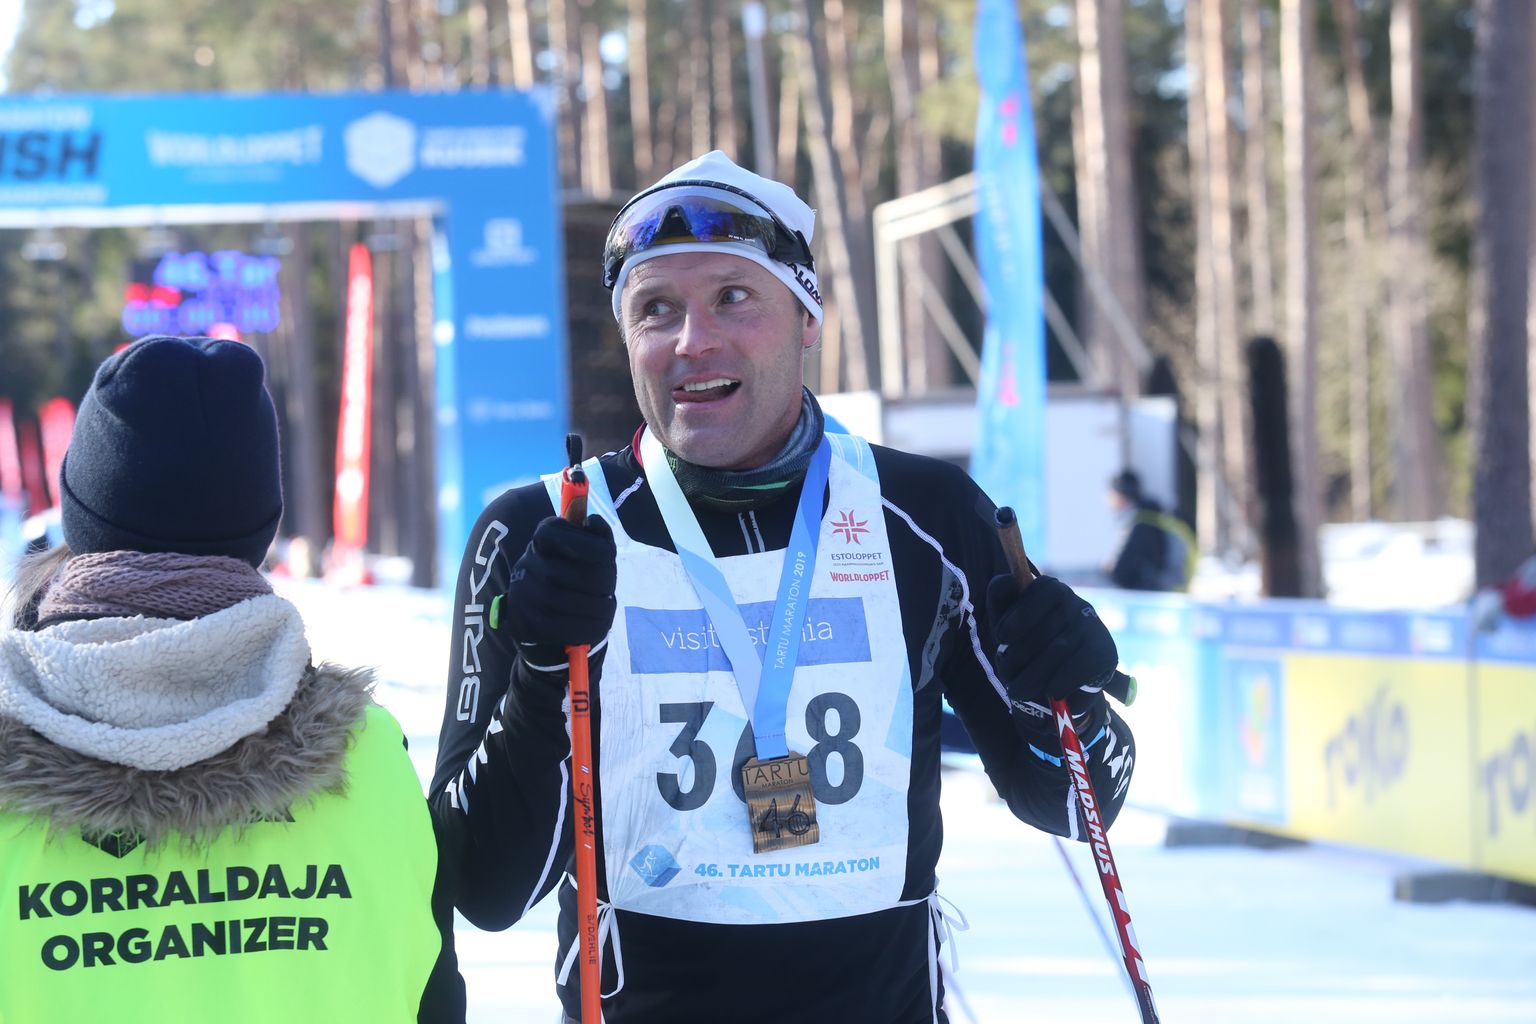 Näitleja Veikko Täär kaks aastat tagasi Tartu maratonil. Tänavu sai ta 372. koha.